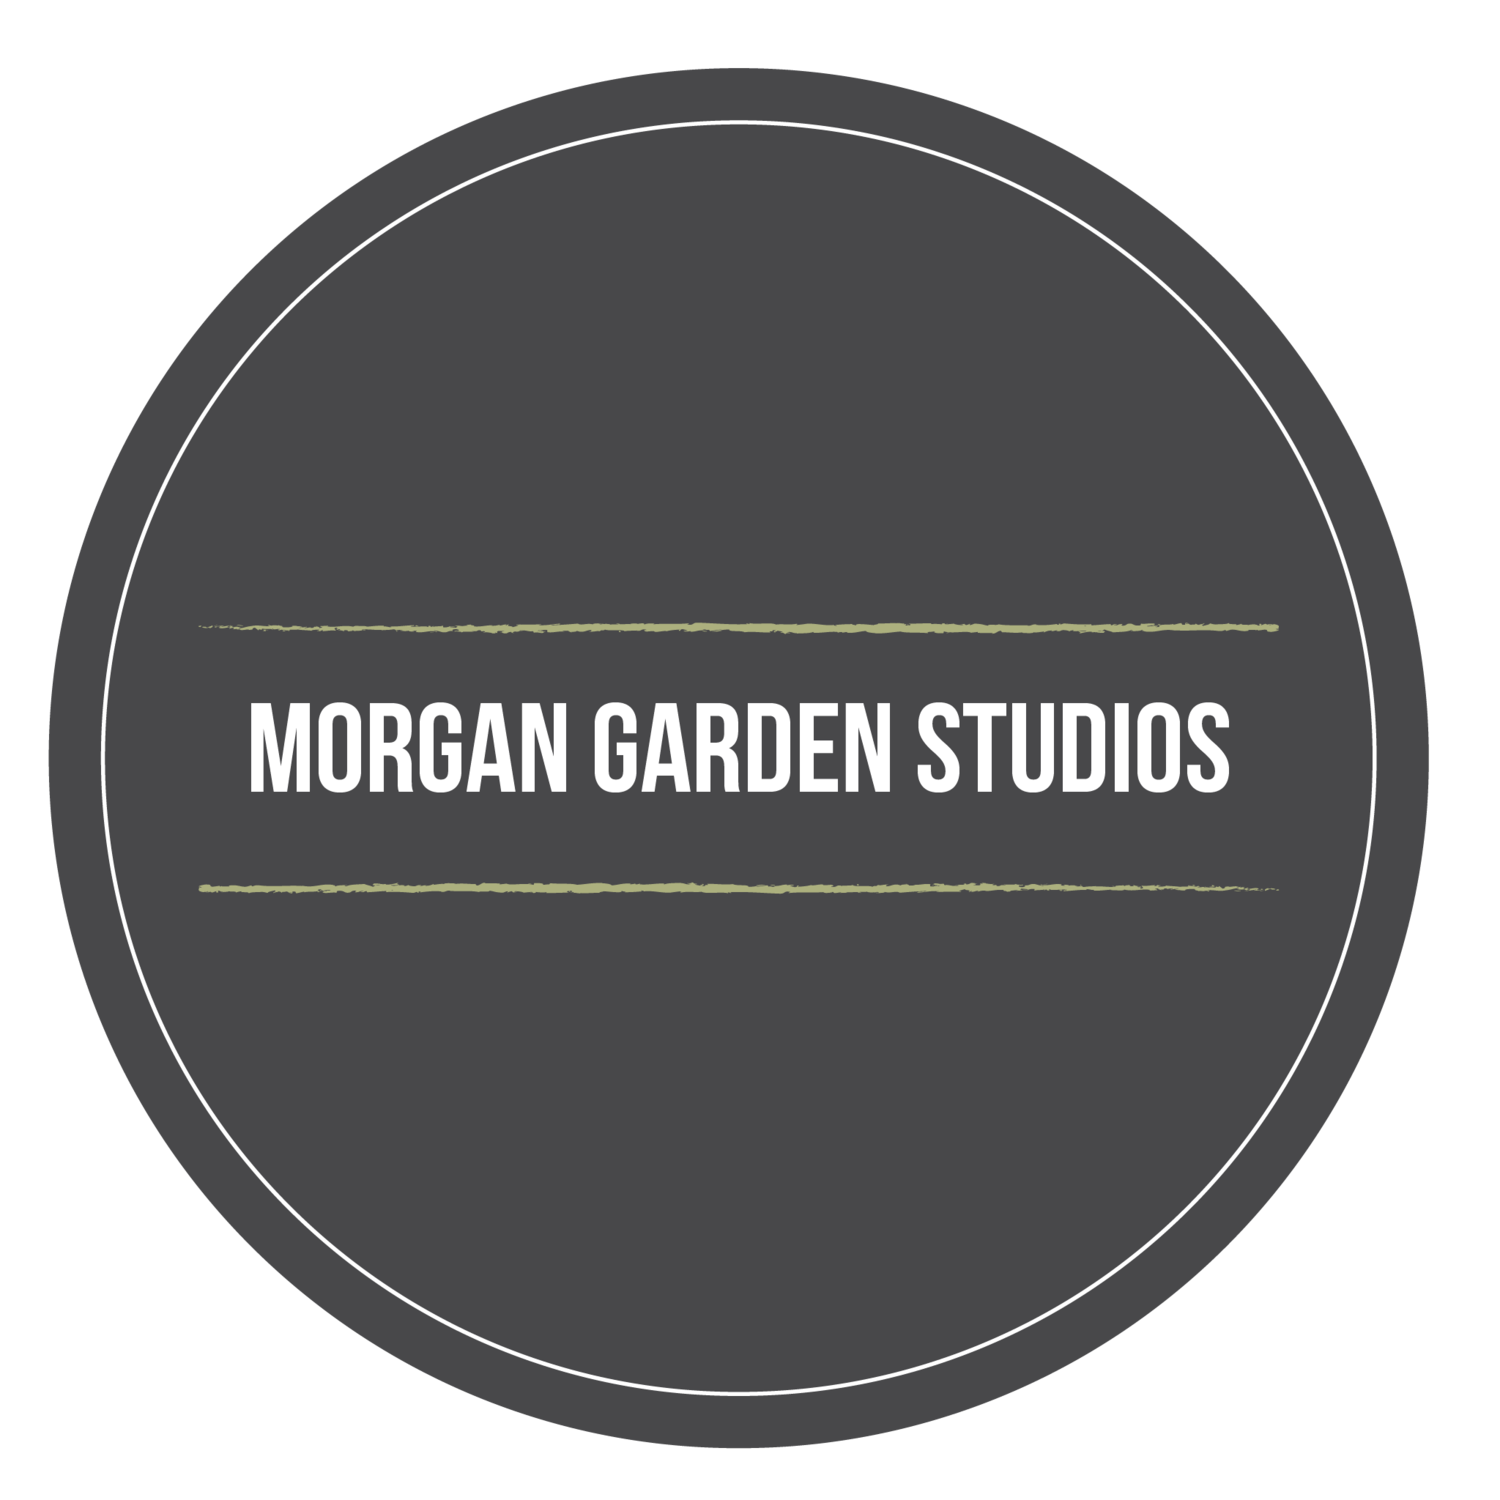 Morgan Garden Studios